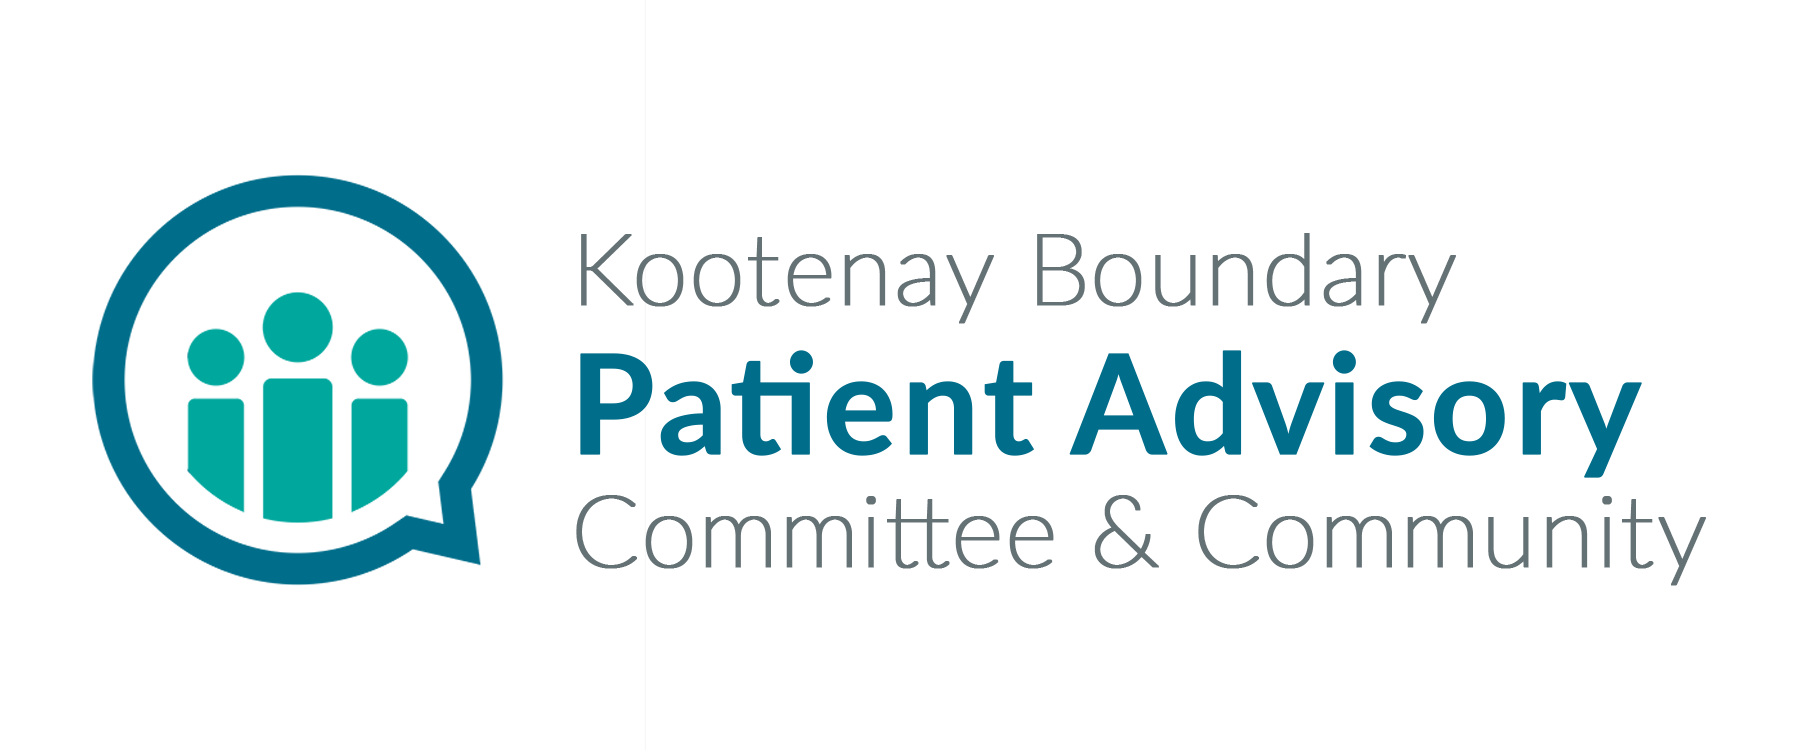 The Kootenay Boundary Patient Advisory Committee & Community logo.